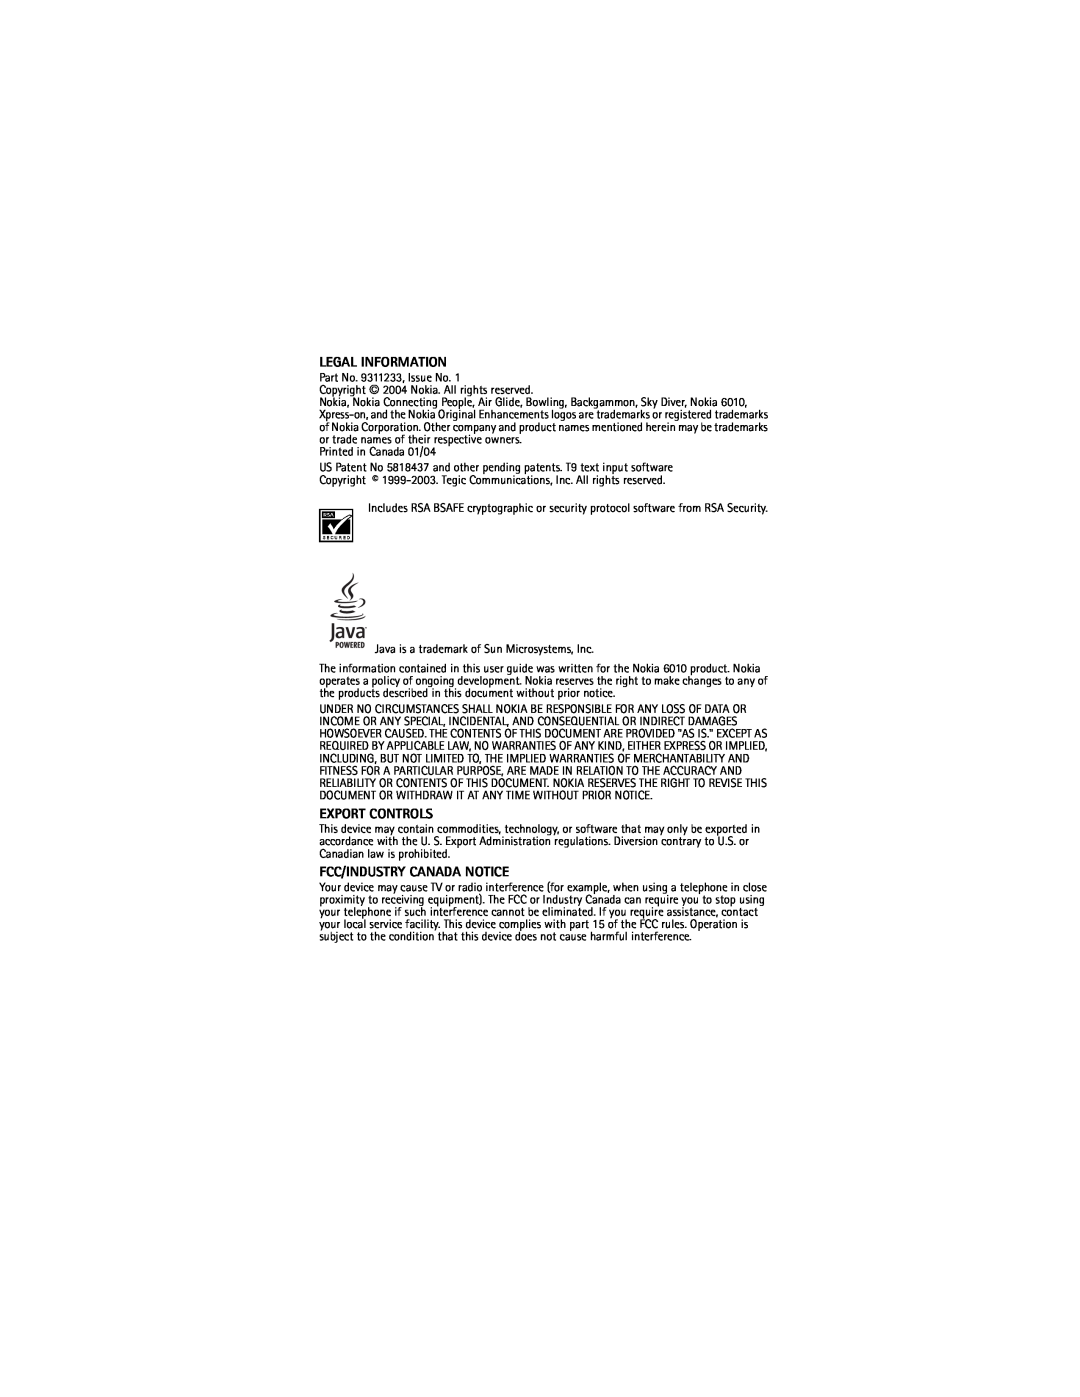 Nokia 6010 warranty Legal Information, Export Controls, Fcc/Industry Canada Notice, Printed in Canada 01/04 